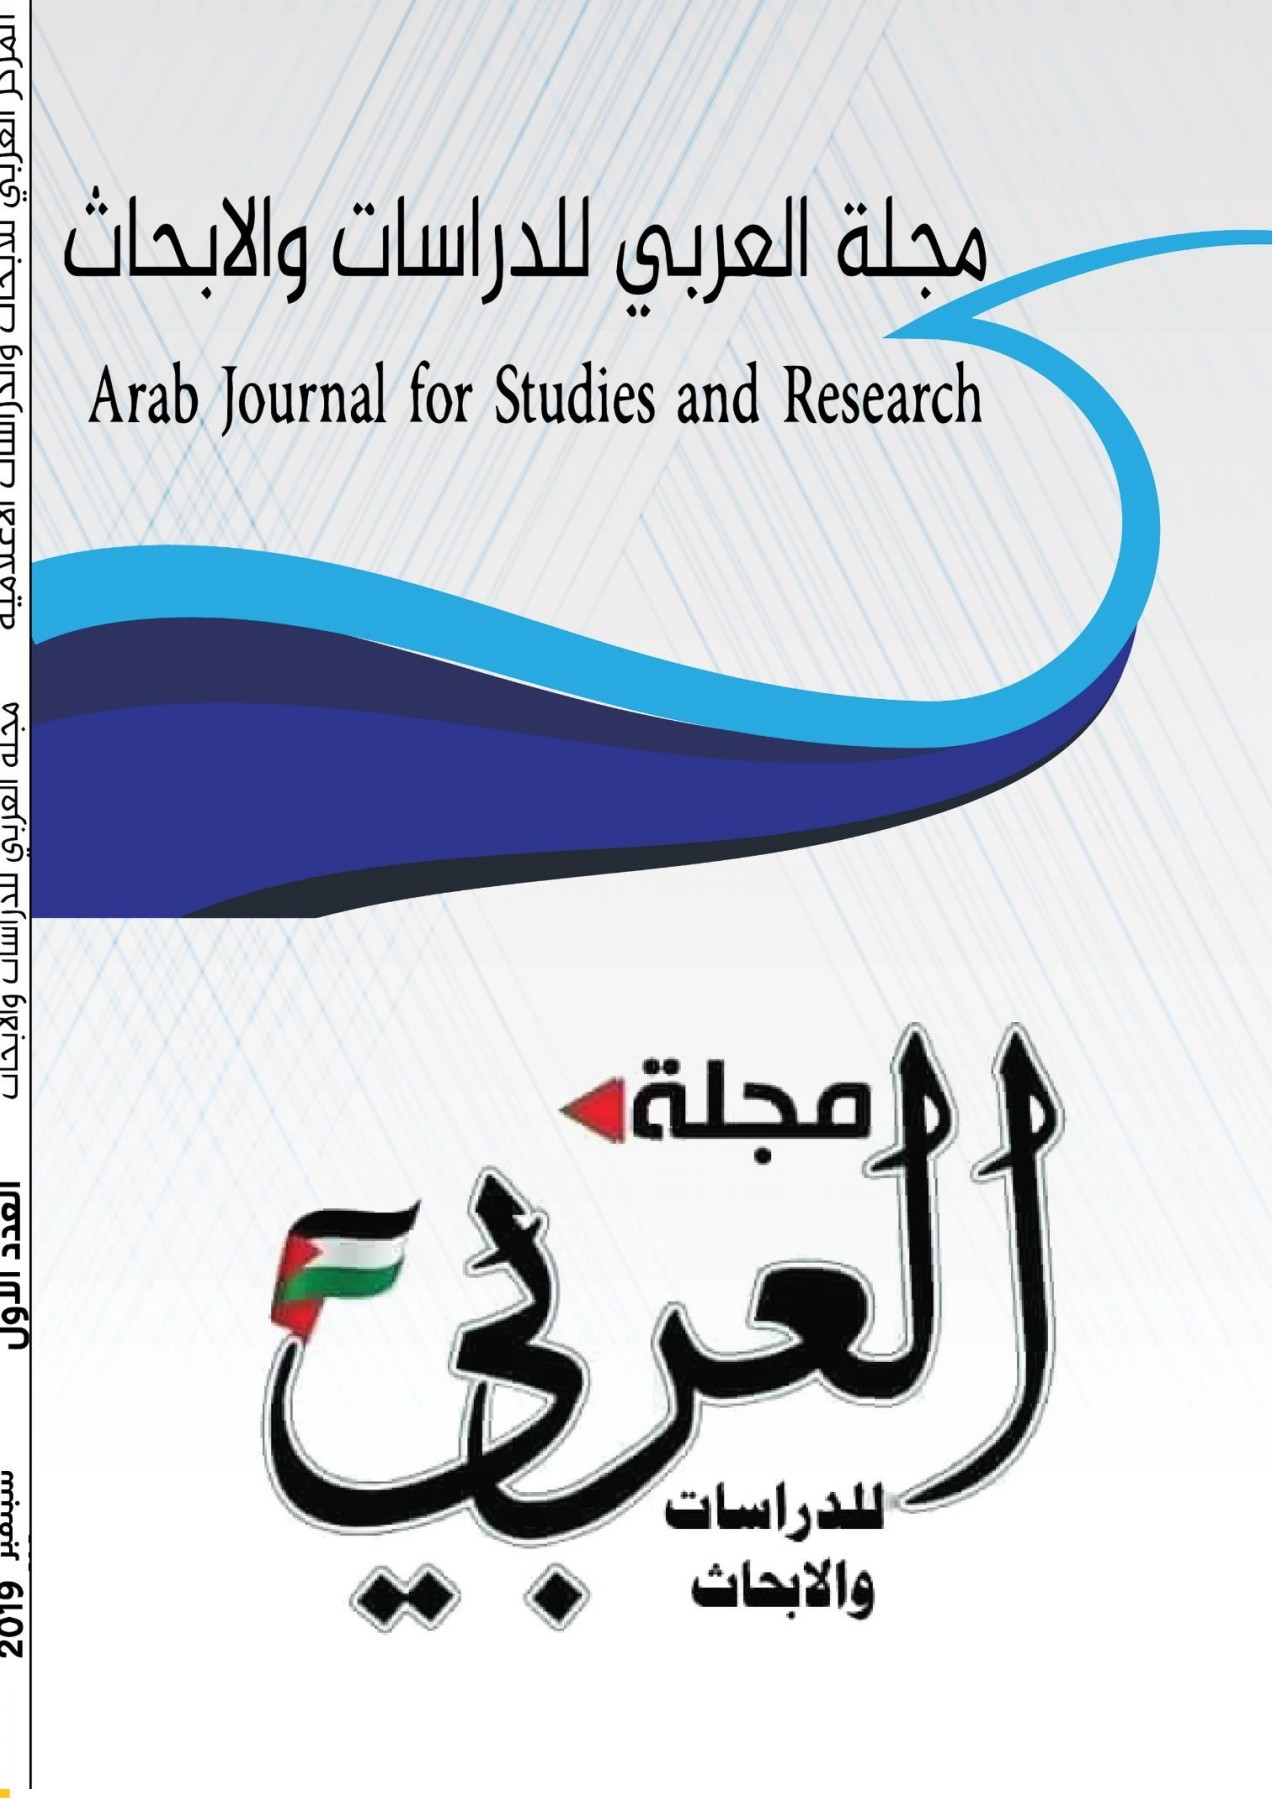 دعوة للكتابة في العدد السابع عشر  من مجلة العربي للدراسات والابحاث